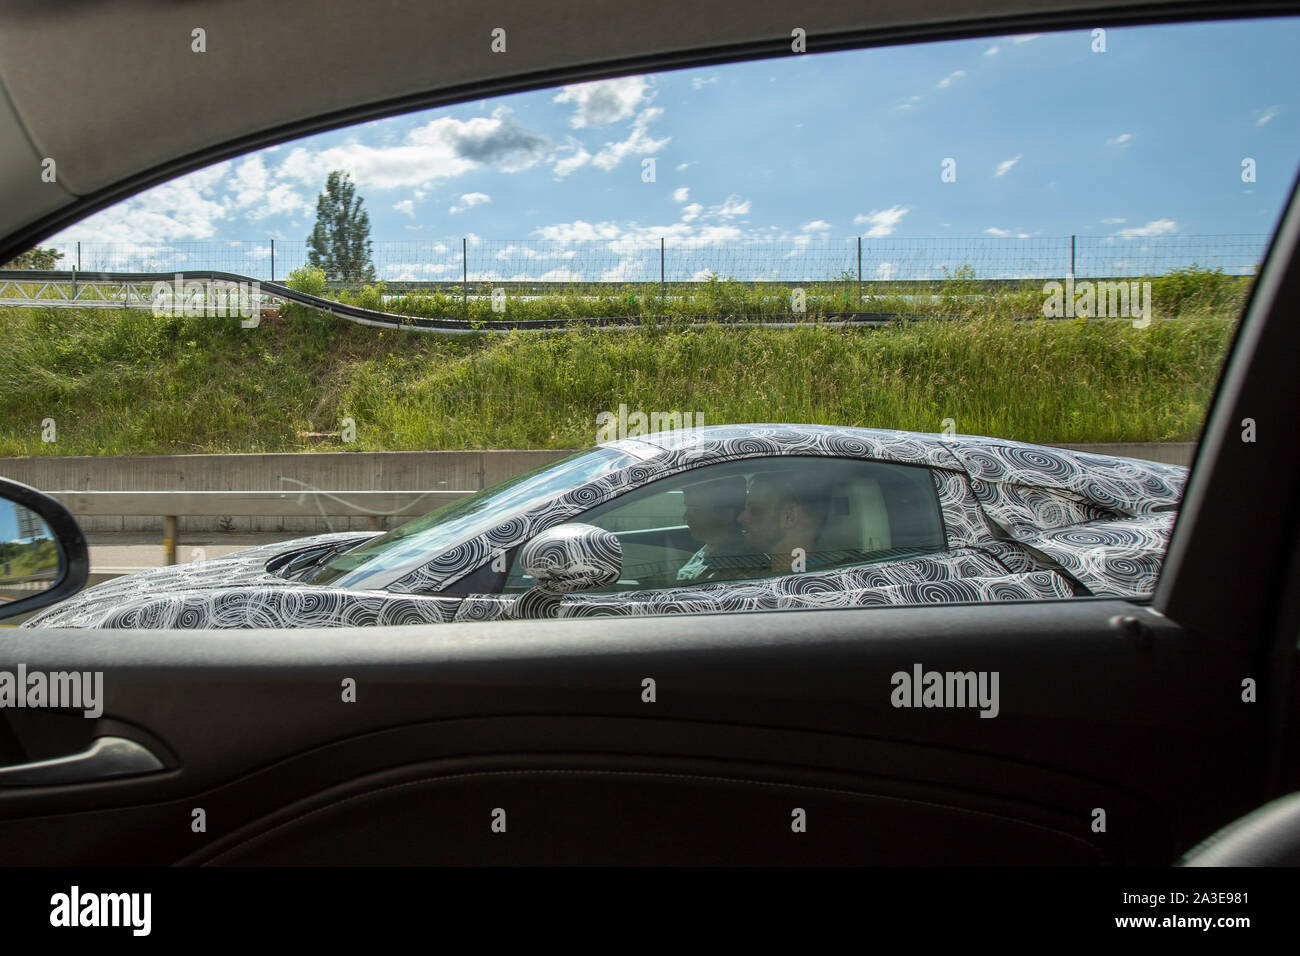 Una McLaren GT test del prototipo fotografato vehiche facendo delle prove su strada in Svizzera. Estremità posteriore e di aspirazione dell'aria fortemente mimetizzati con entrambi camo nastro e pannelli extra. Le luci di coda sono nascosti sotto il pannello in mesh. Il nuovo modello GT è stato presentato per la prima volta al 2019 Ginevra Auto Salon, ma i dettagli circa la vettura è stato rilasciato per la prima volta nel maggio del medesimo anno. Queste immagini sono state scattate nel giugno 2019 e si differenzia dalle precedenti foto in avente pannelli extra schioccato in su il lato posteriore e il lato, così come le luci di coda camuffato. Il contorno delle luci di coda siano visibili attraverso il nastro. Foto Stock